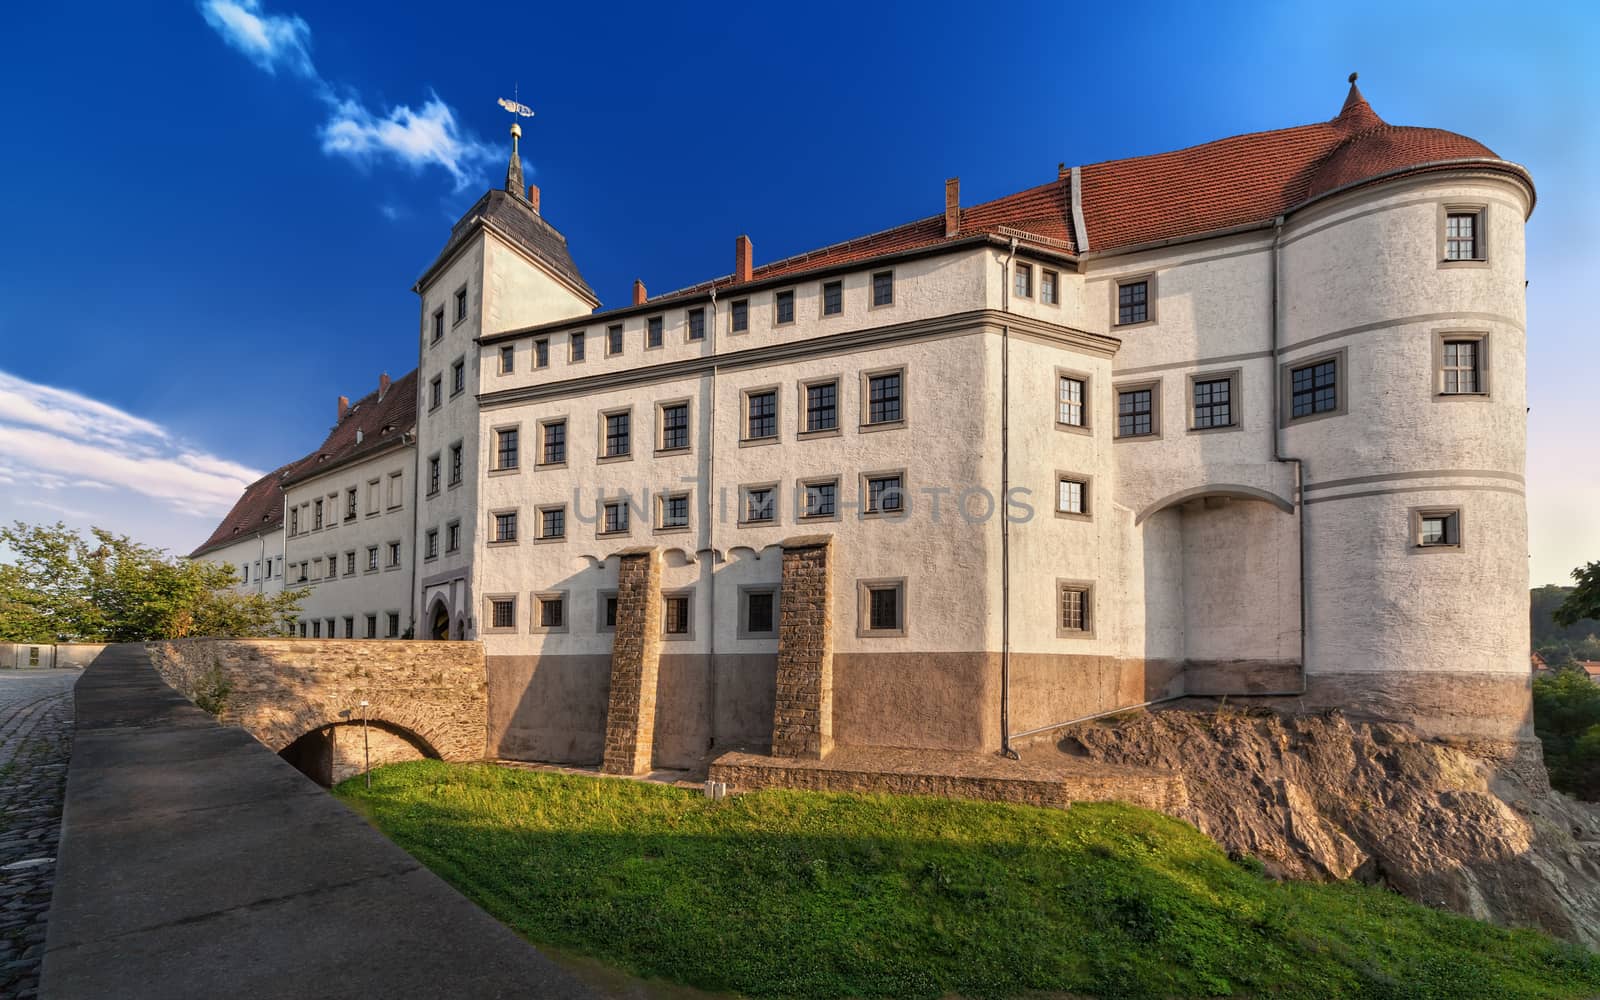 The history of castle Nossen began in 1185